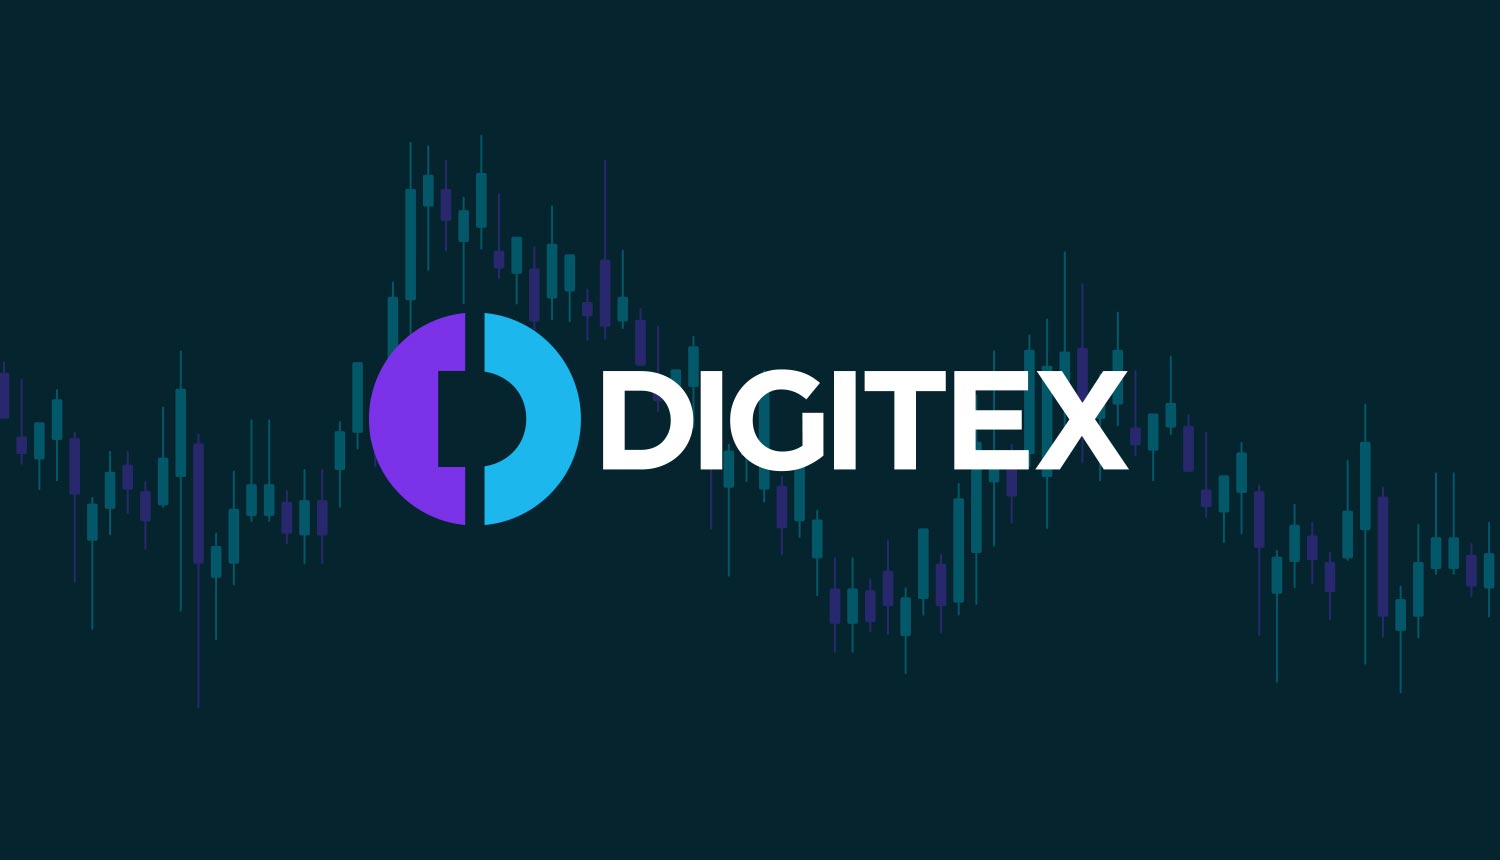 Digitex Futures Price Drops Below $0.12 as Market Conditions Worsen